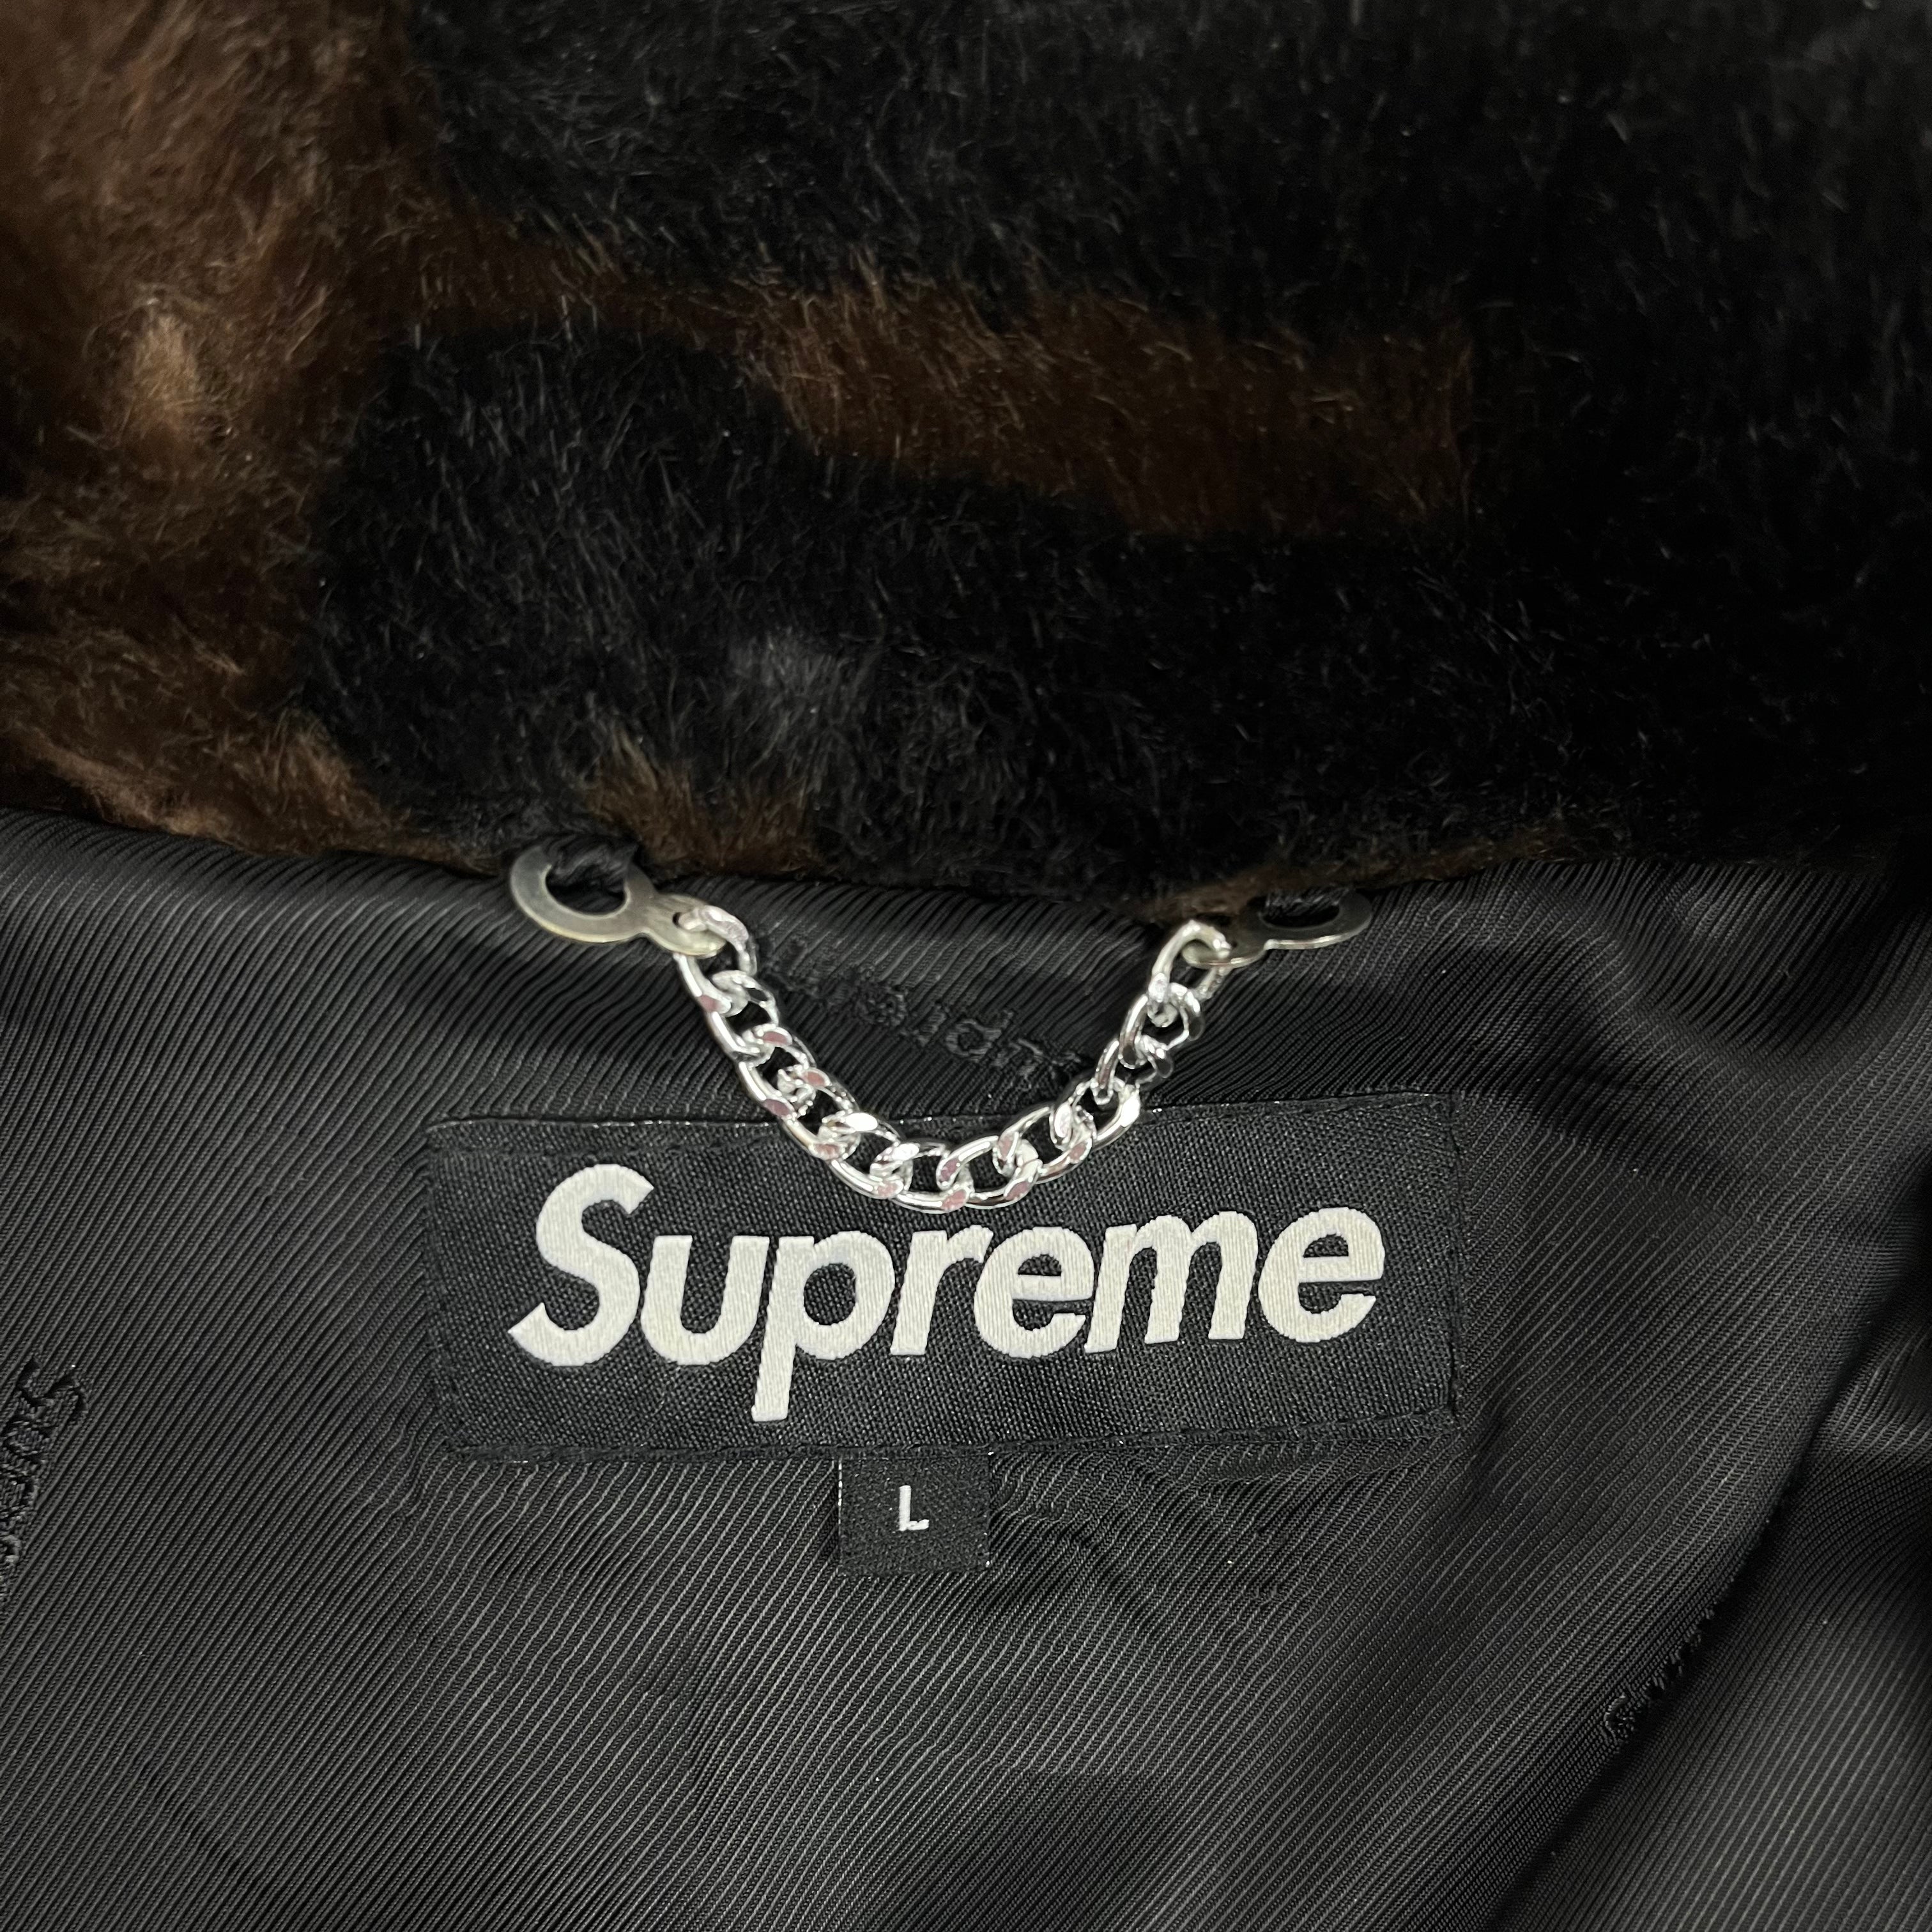 2018 Supreme Faux Fur Jacket